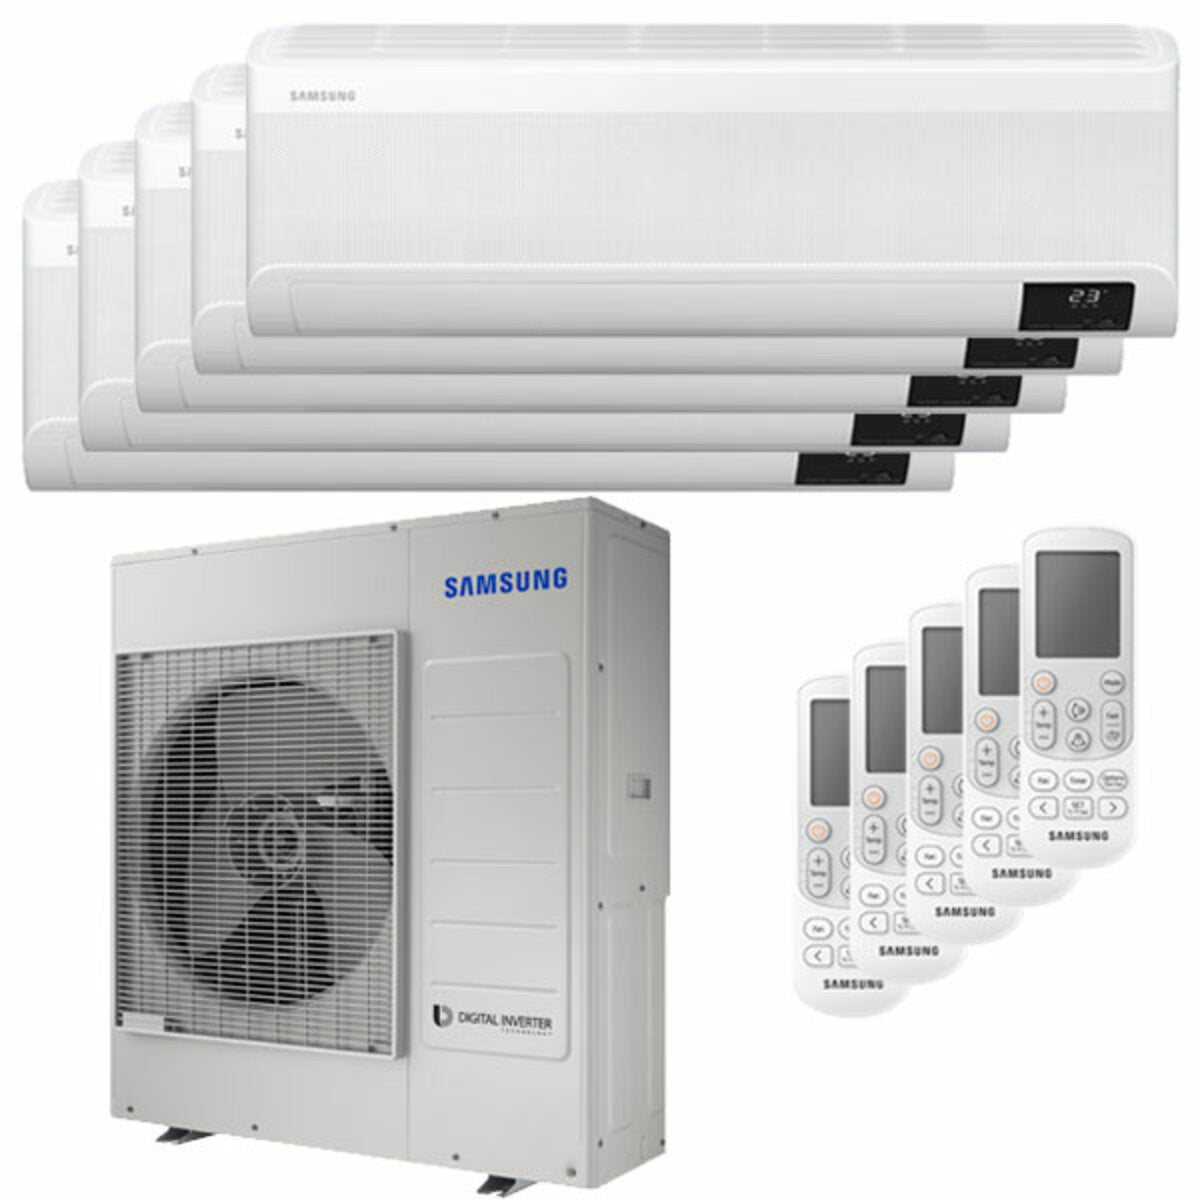 Samsung windfree Klimaanlage Avant Penta Split 7000 + 7000 + 12000 + 12000 + 12000 BTU Inverter A++ WLAN Außengerät 10,0 kW